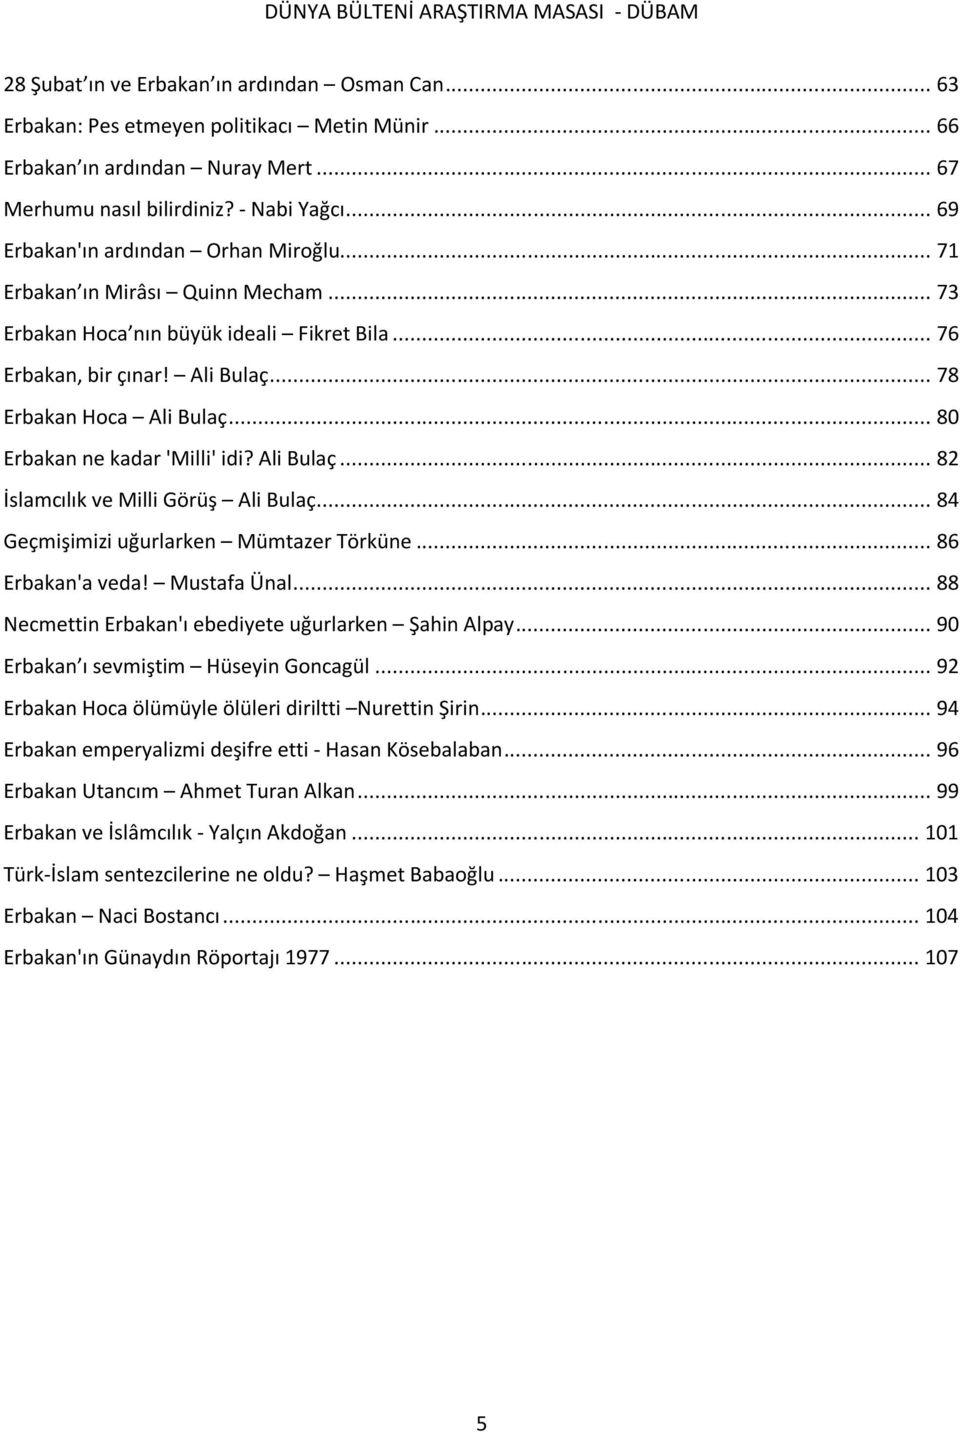 .. 80 Erbakan ne kadar 'Milli' idi? Ali Bulaç... 82 İslamcılık ve Milli Görüş Ali Bulaç... 84 Geçmişimizi uğurlarken Mümtazer Törküne... 86 Erbakan'a veda! Mustafa Ünal.